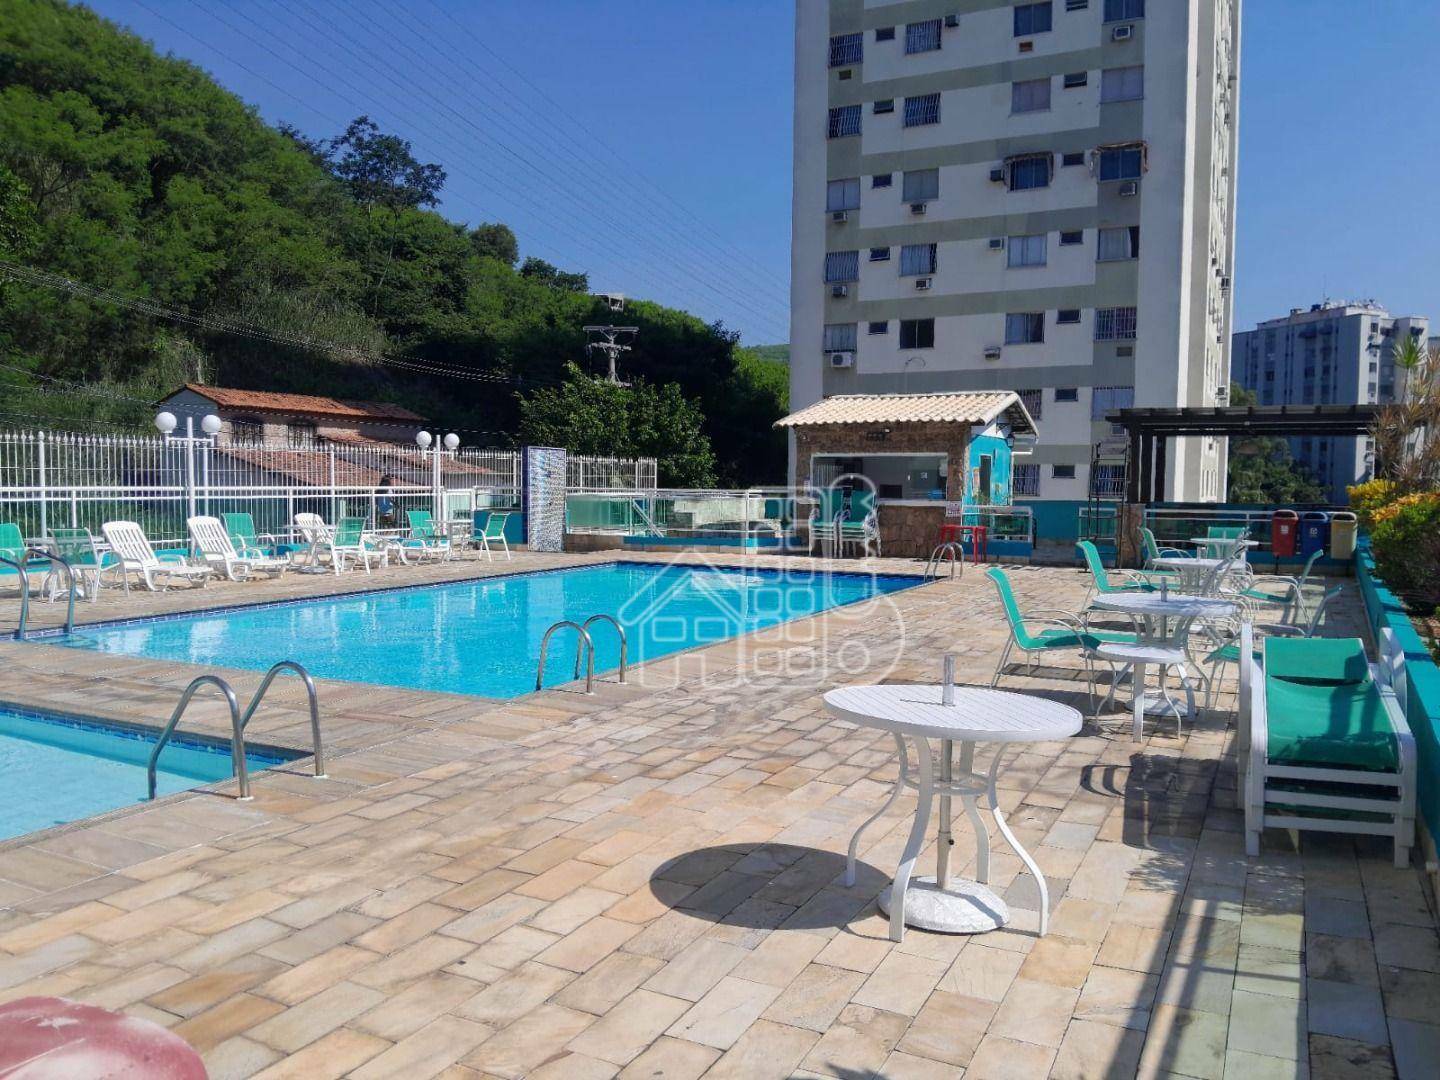 Apartamento com 2 dormitórios à venda, 65 m² por R$ 285.000,00 - Engenhoca - Niterói/RJ